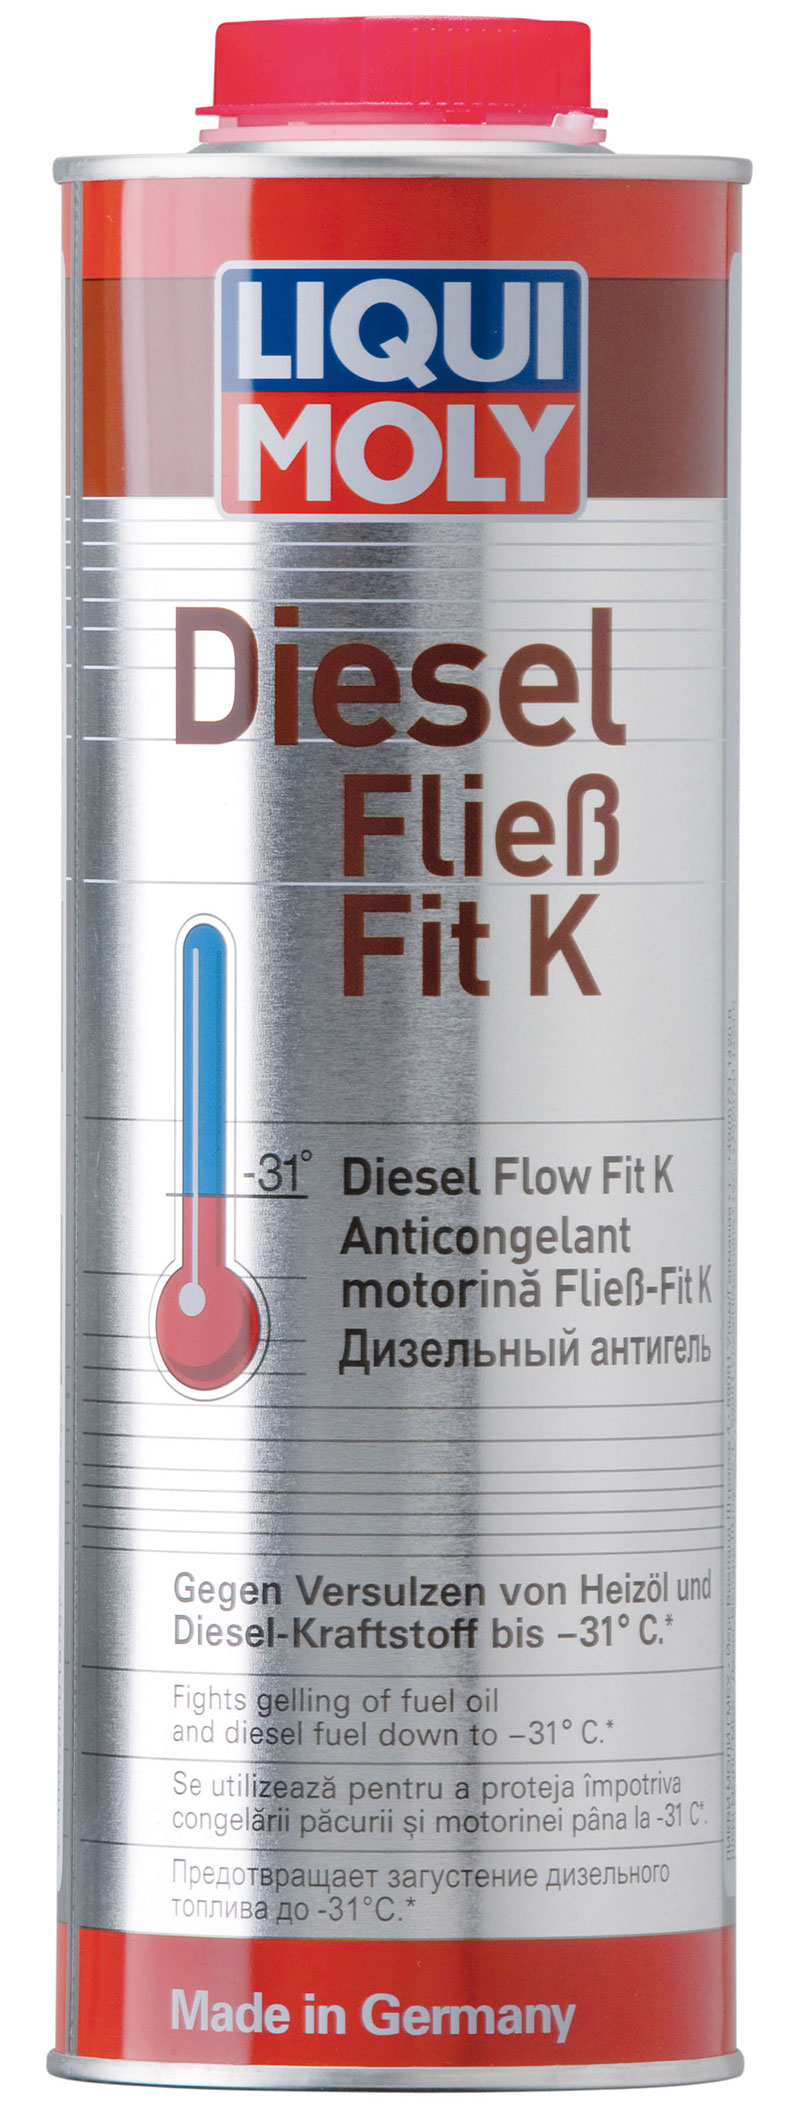 Дизельный антигель Liqui Moly Diesel Fliess-Fit (1 литр)